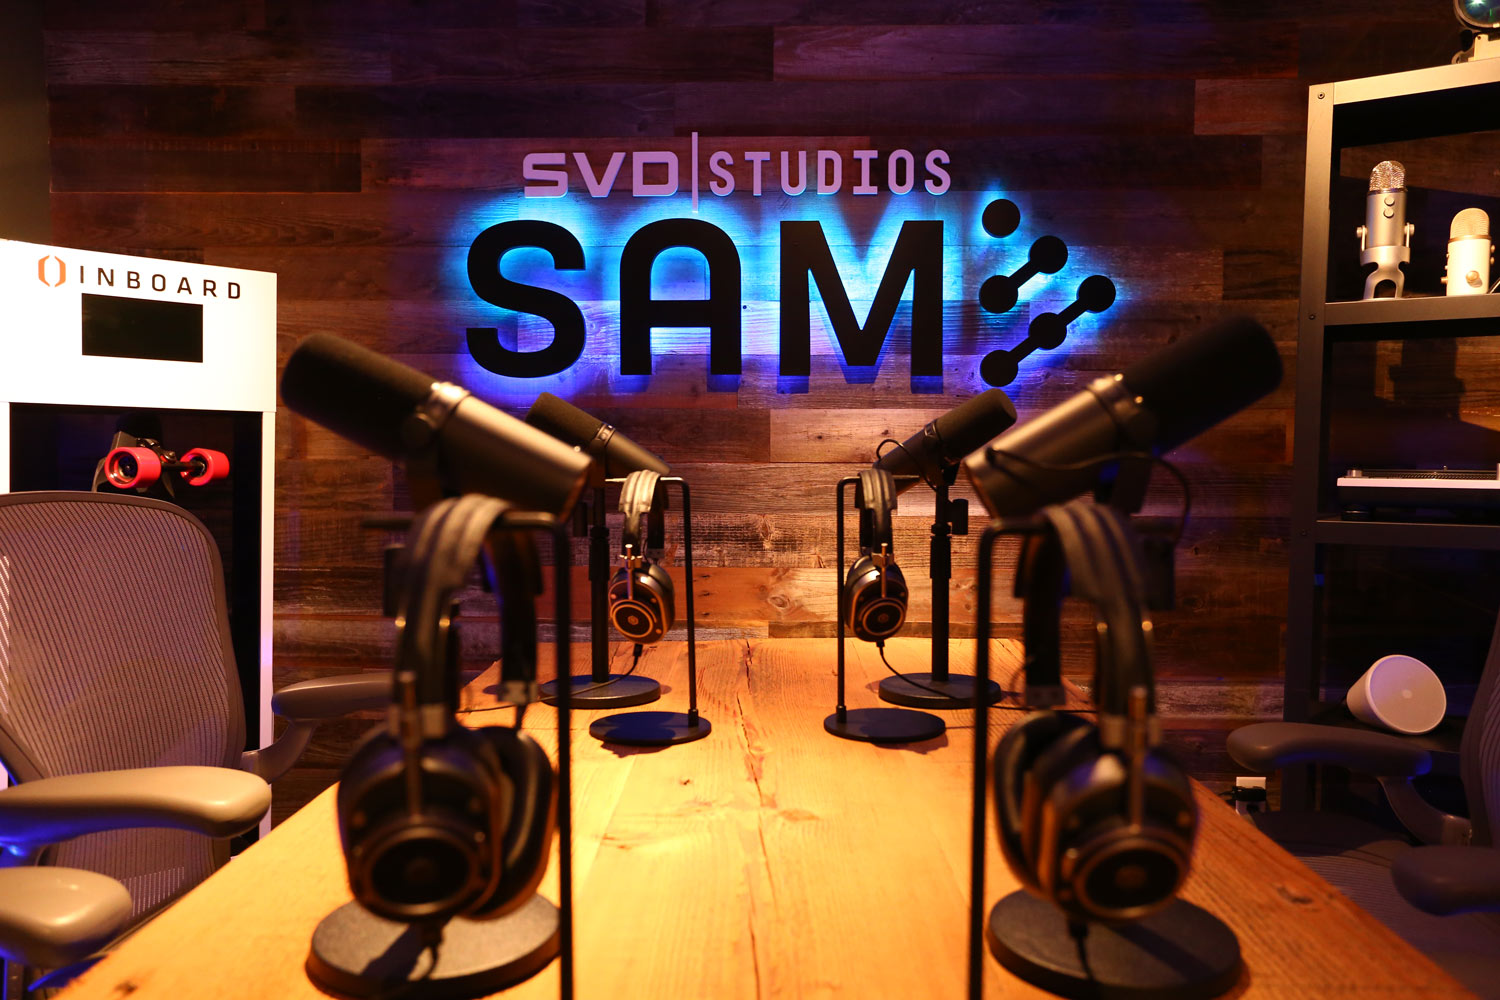 SVD Studios studio in Burlingame, CA